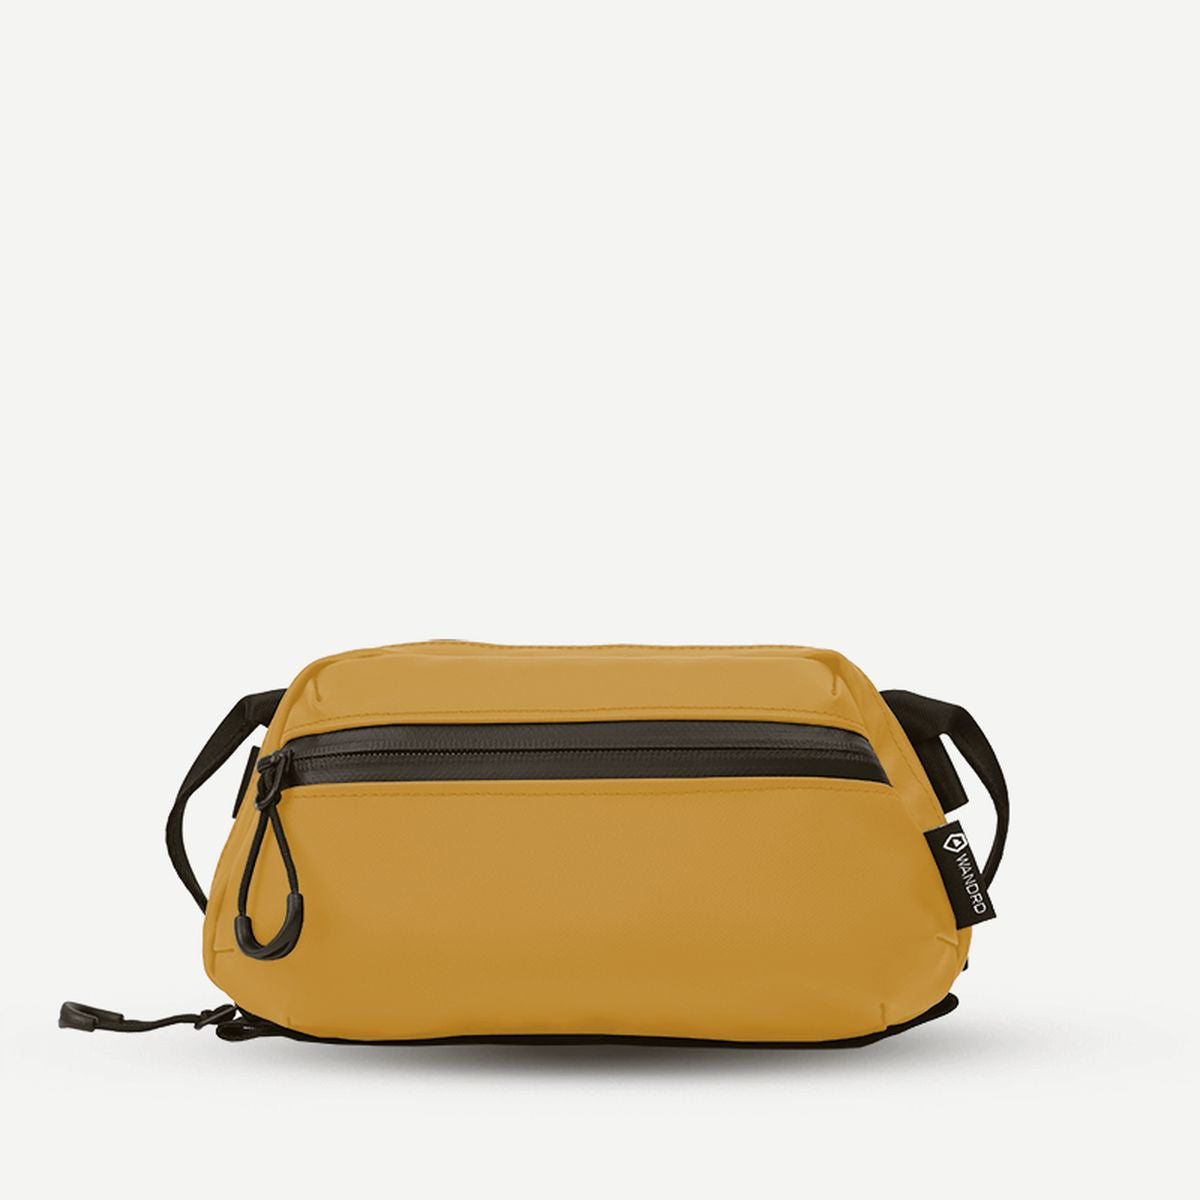 Wandrd Tech Bag Medium  - Dallol Yellow